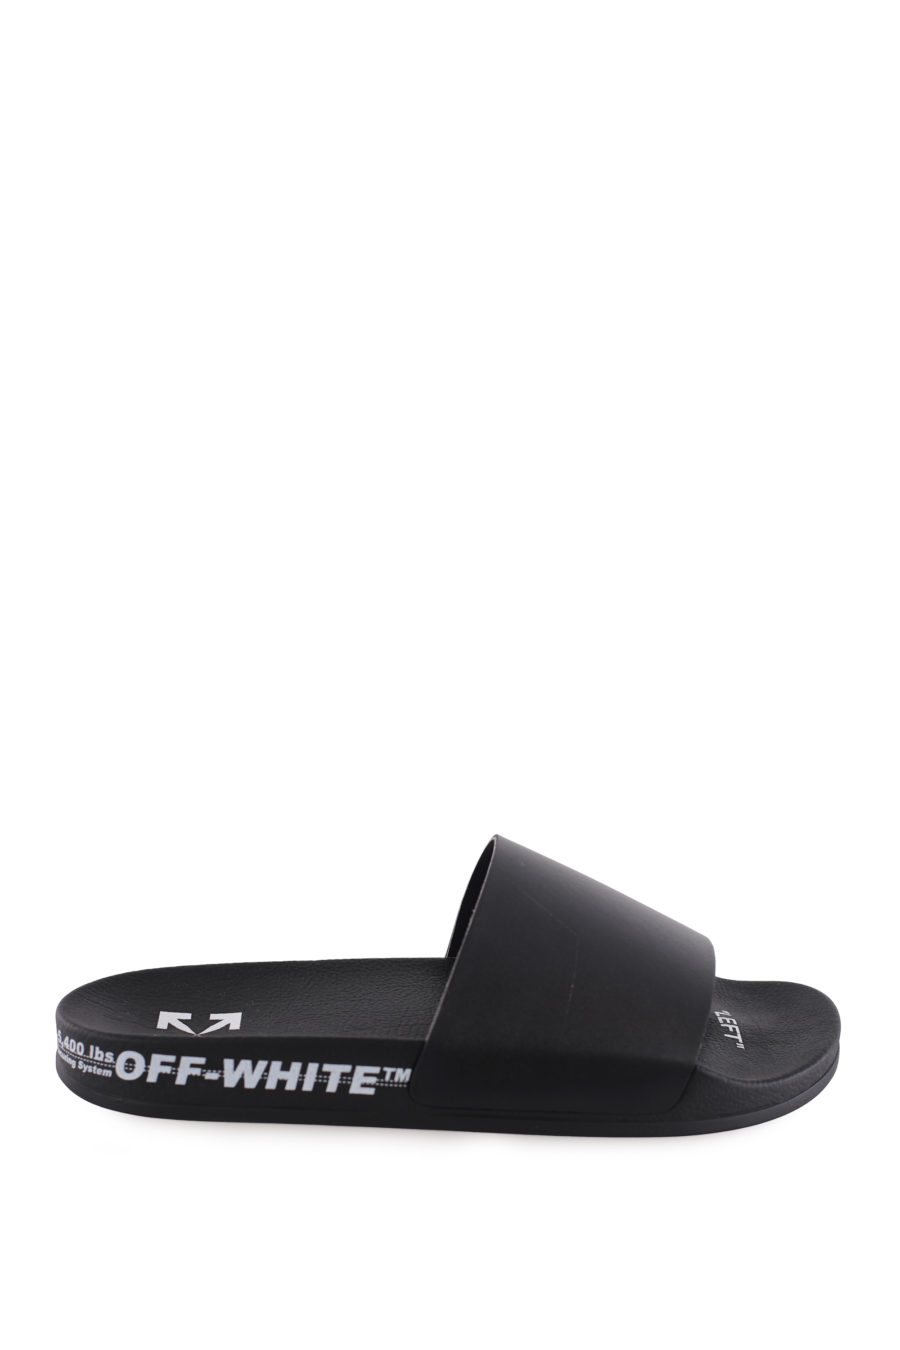 Schwarze Pantoletten mit weißen Details - IMG 7375